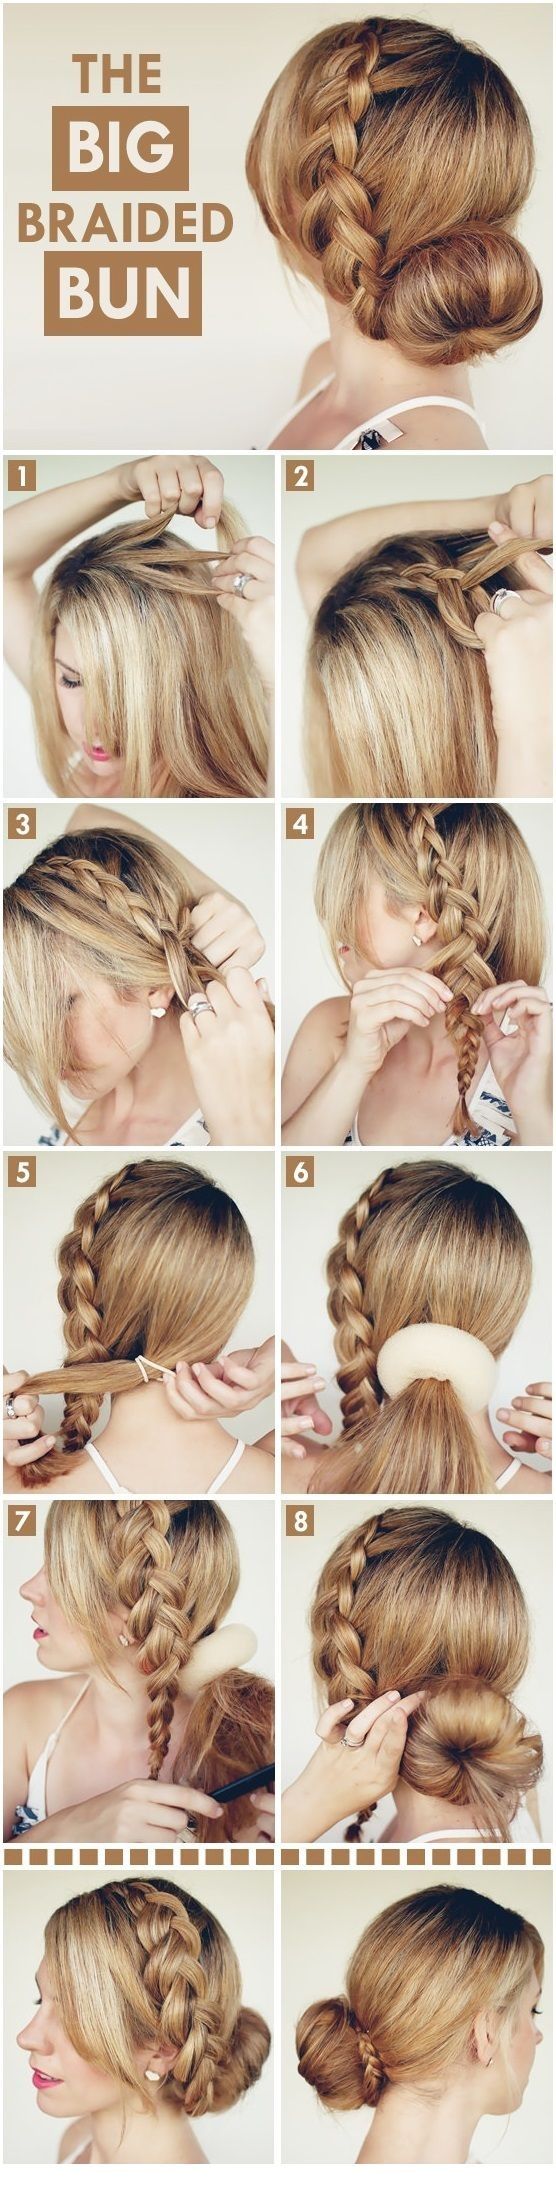 hairstyles-easy-braids-suspenders